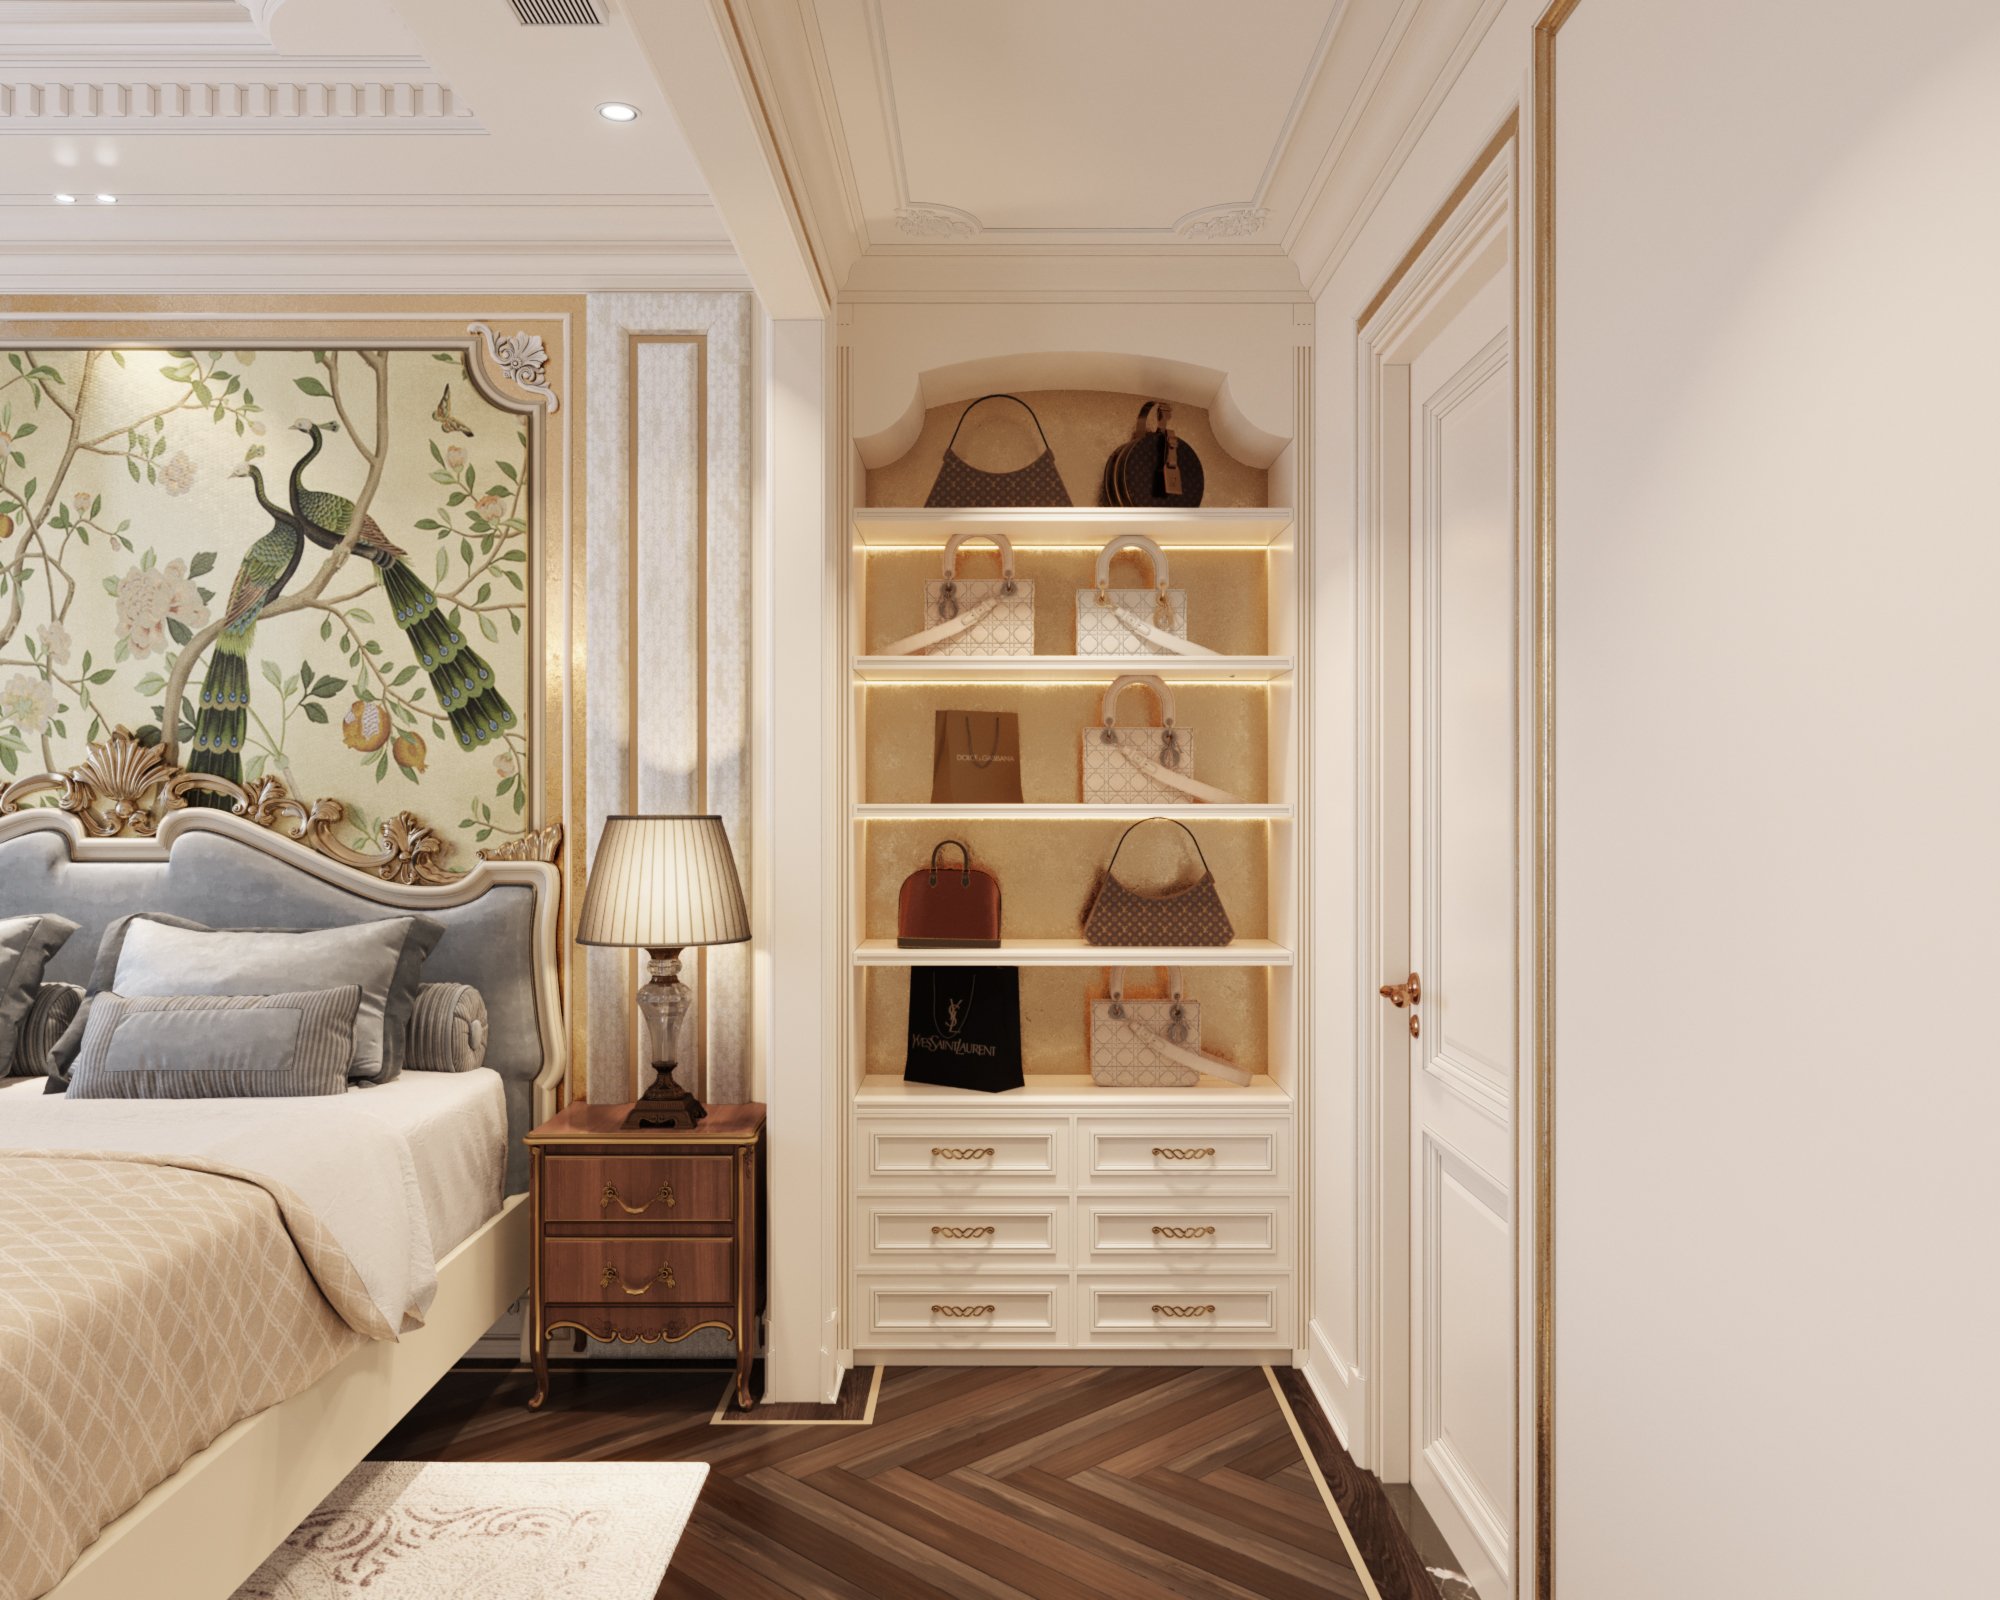 Phòng ngủ, phong cách tân cổ điển Neo Classic, thiết kế concept nội thất, nhà phố Verosa Park Khang Điền